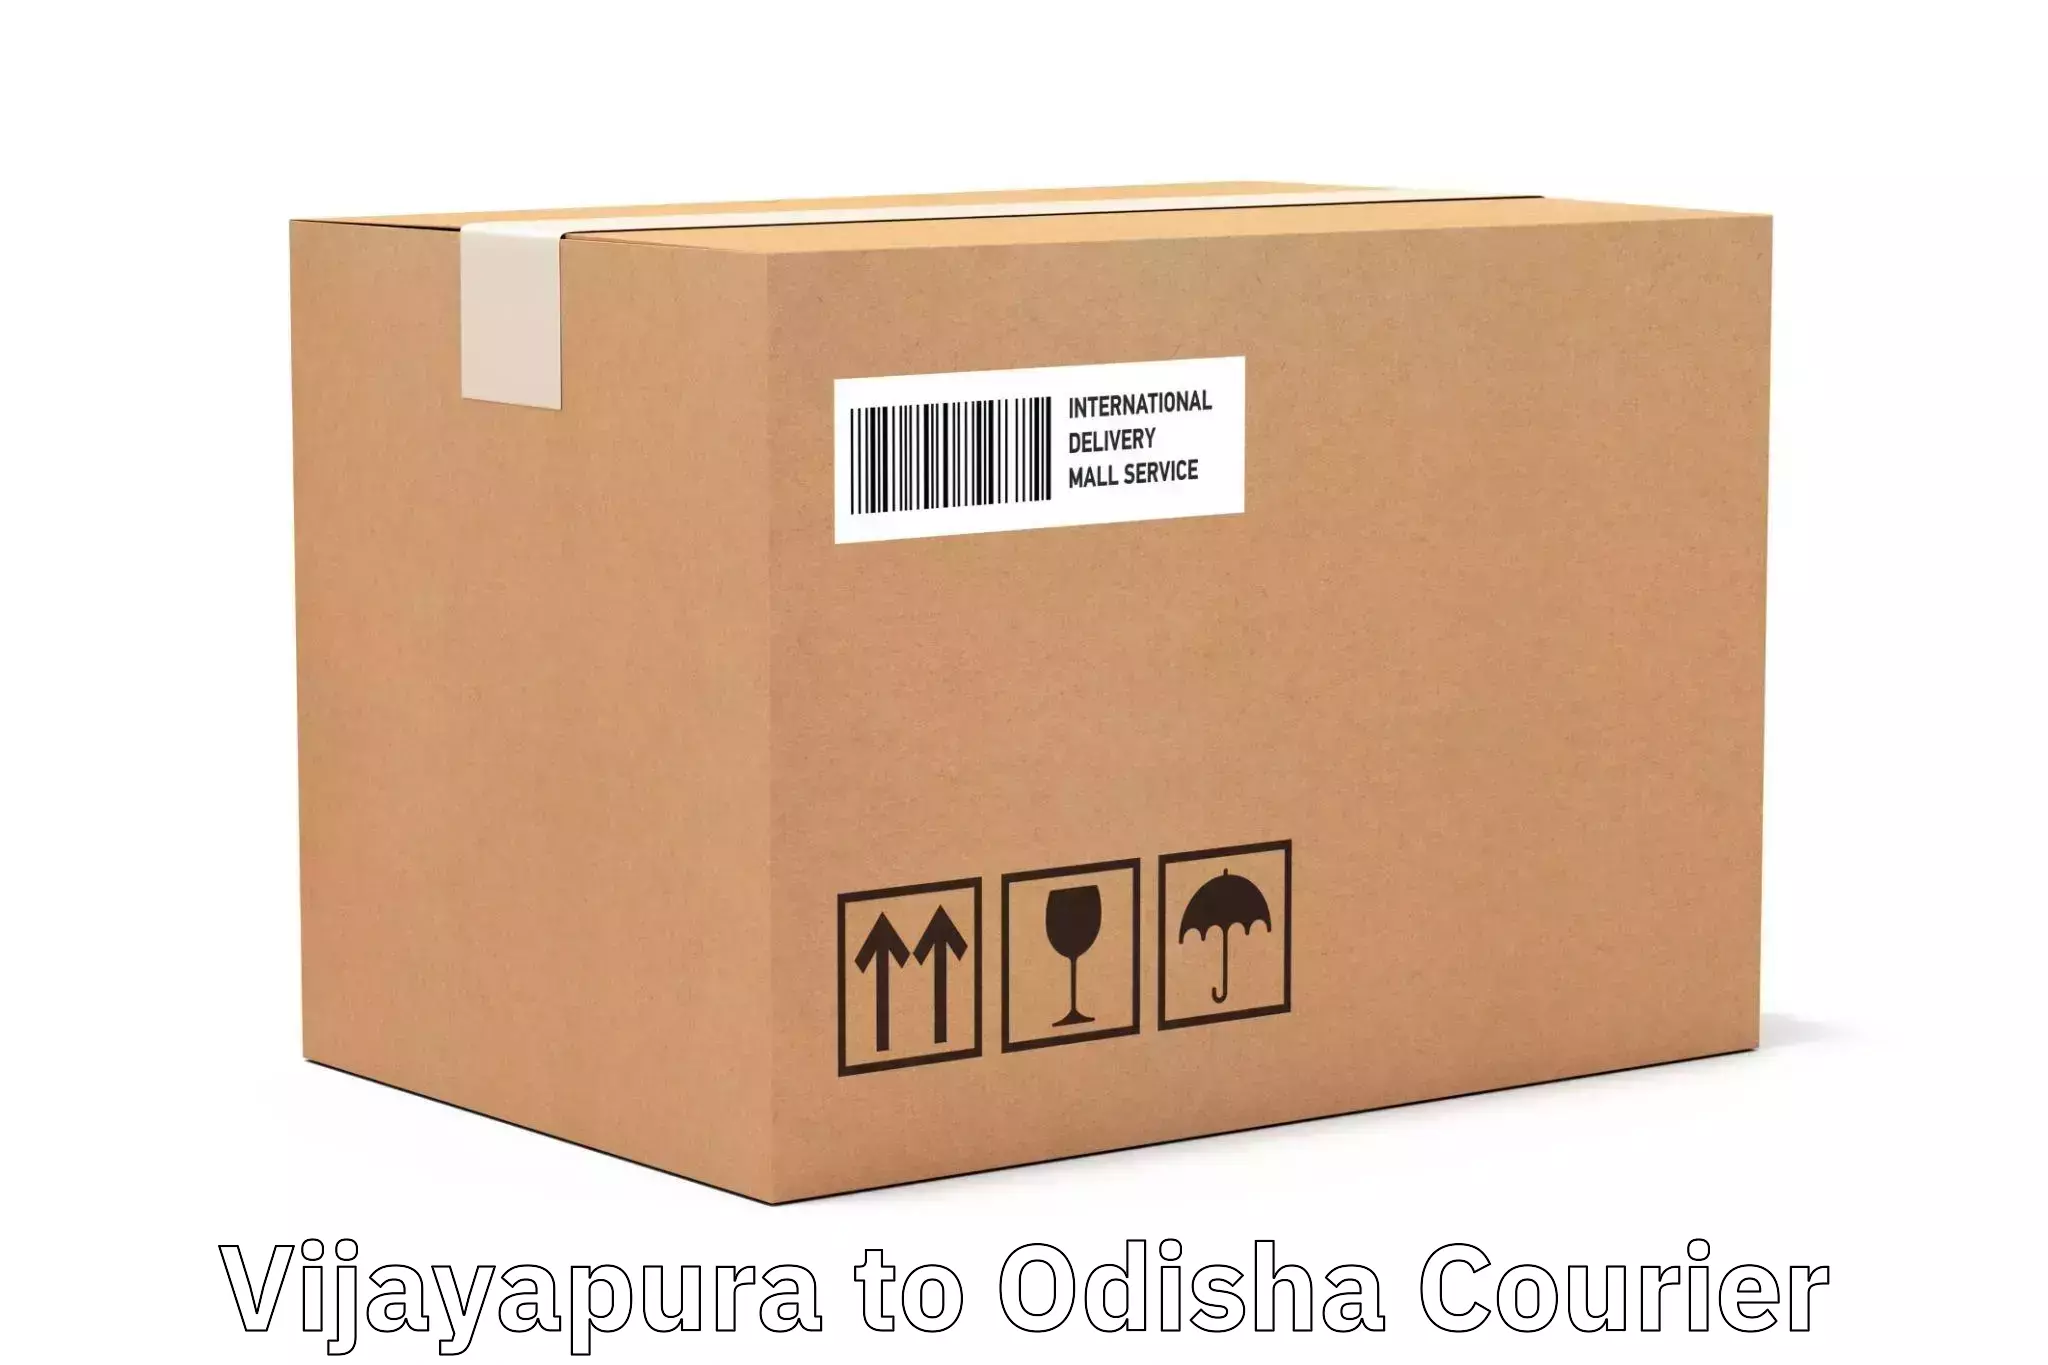 Cash on delivery service Vijayapura to Odisha